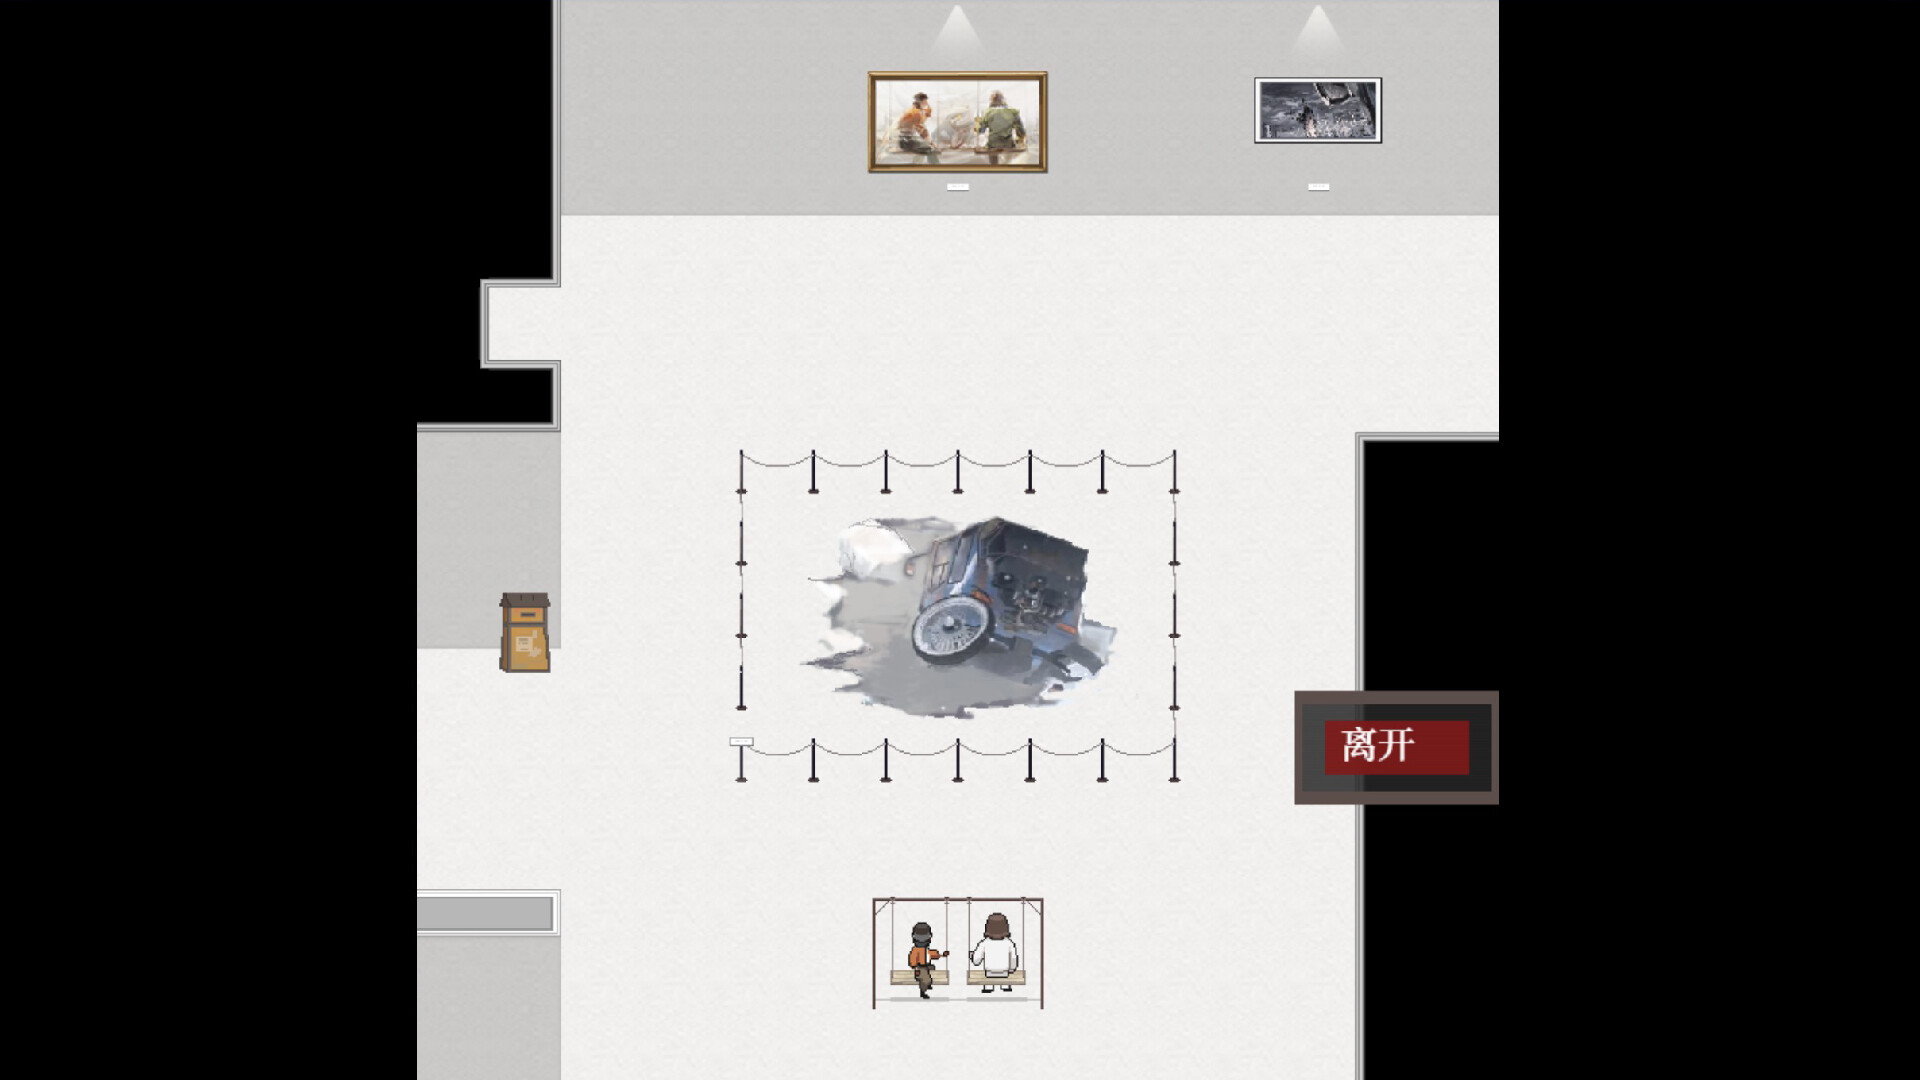 极乐迪斯科同人游戏《白色哀悼：灰域美术馆》现已免费上架Steam平台